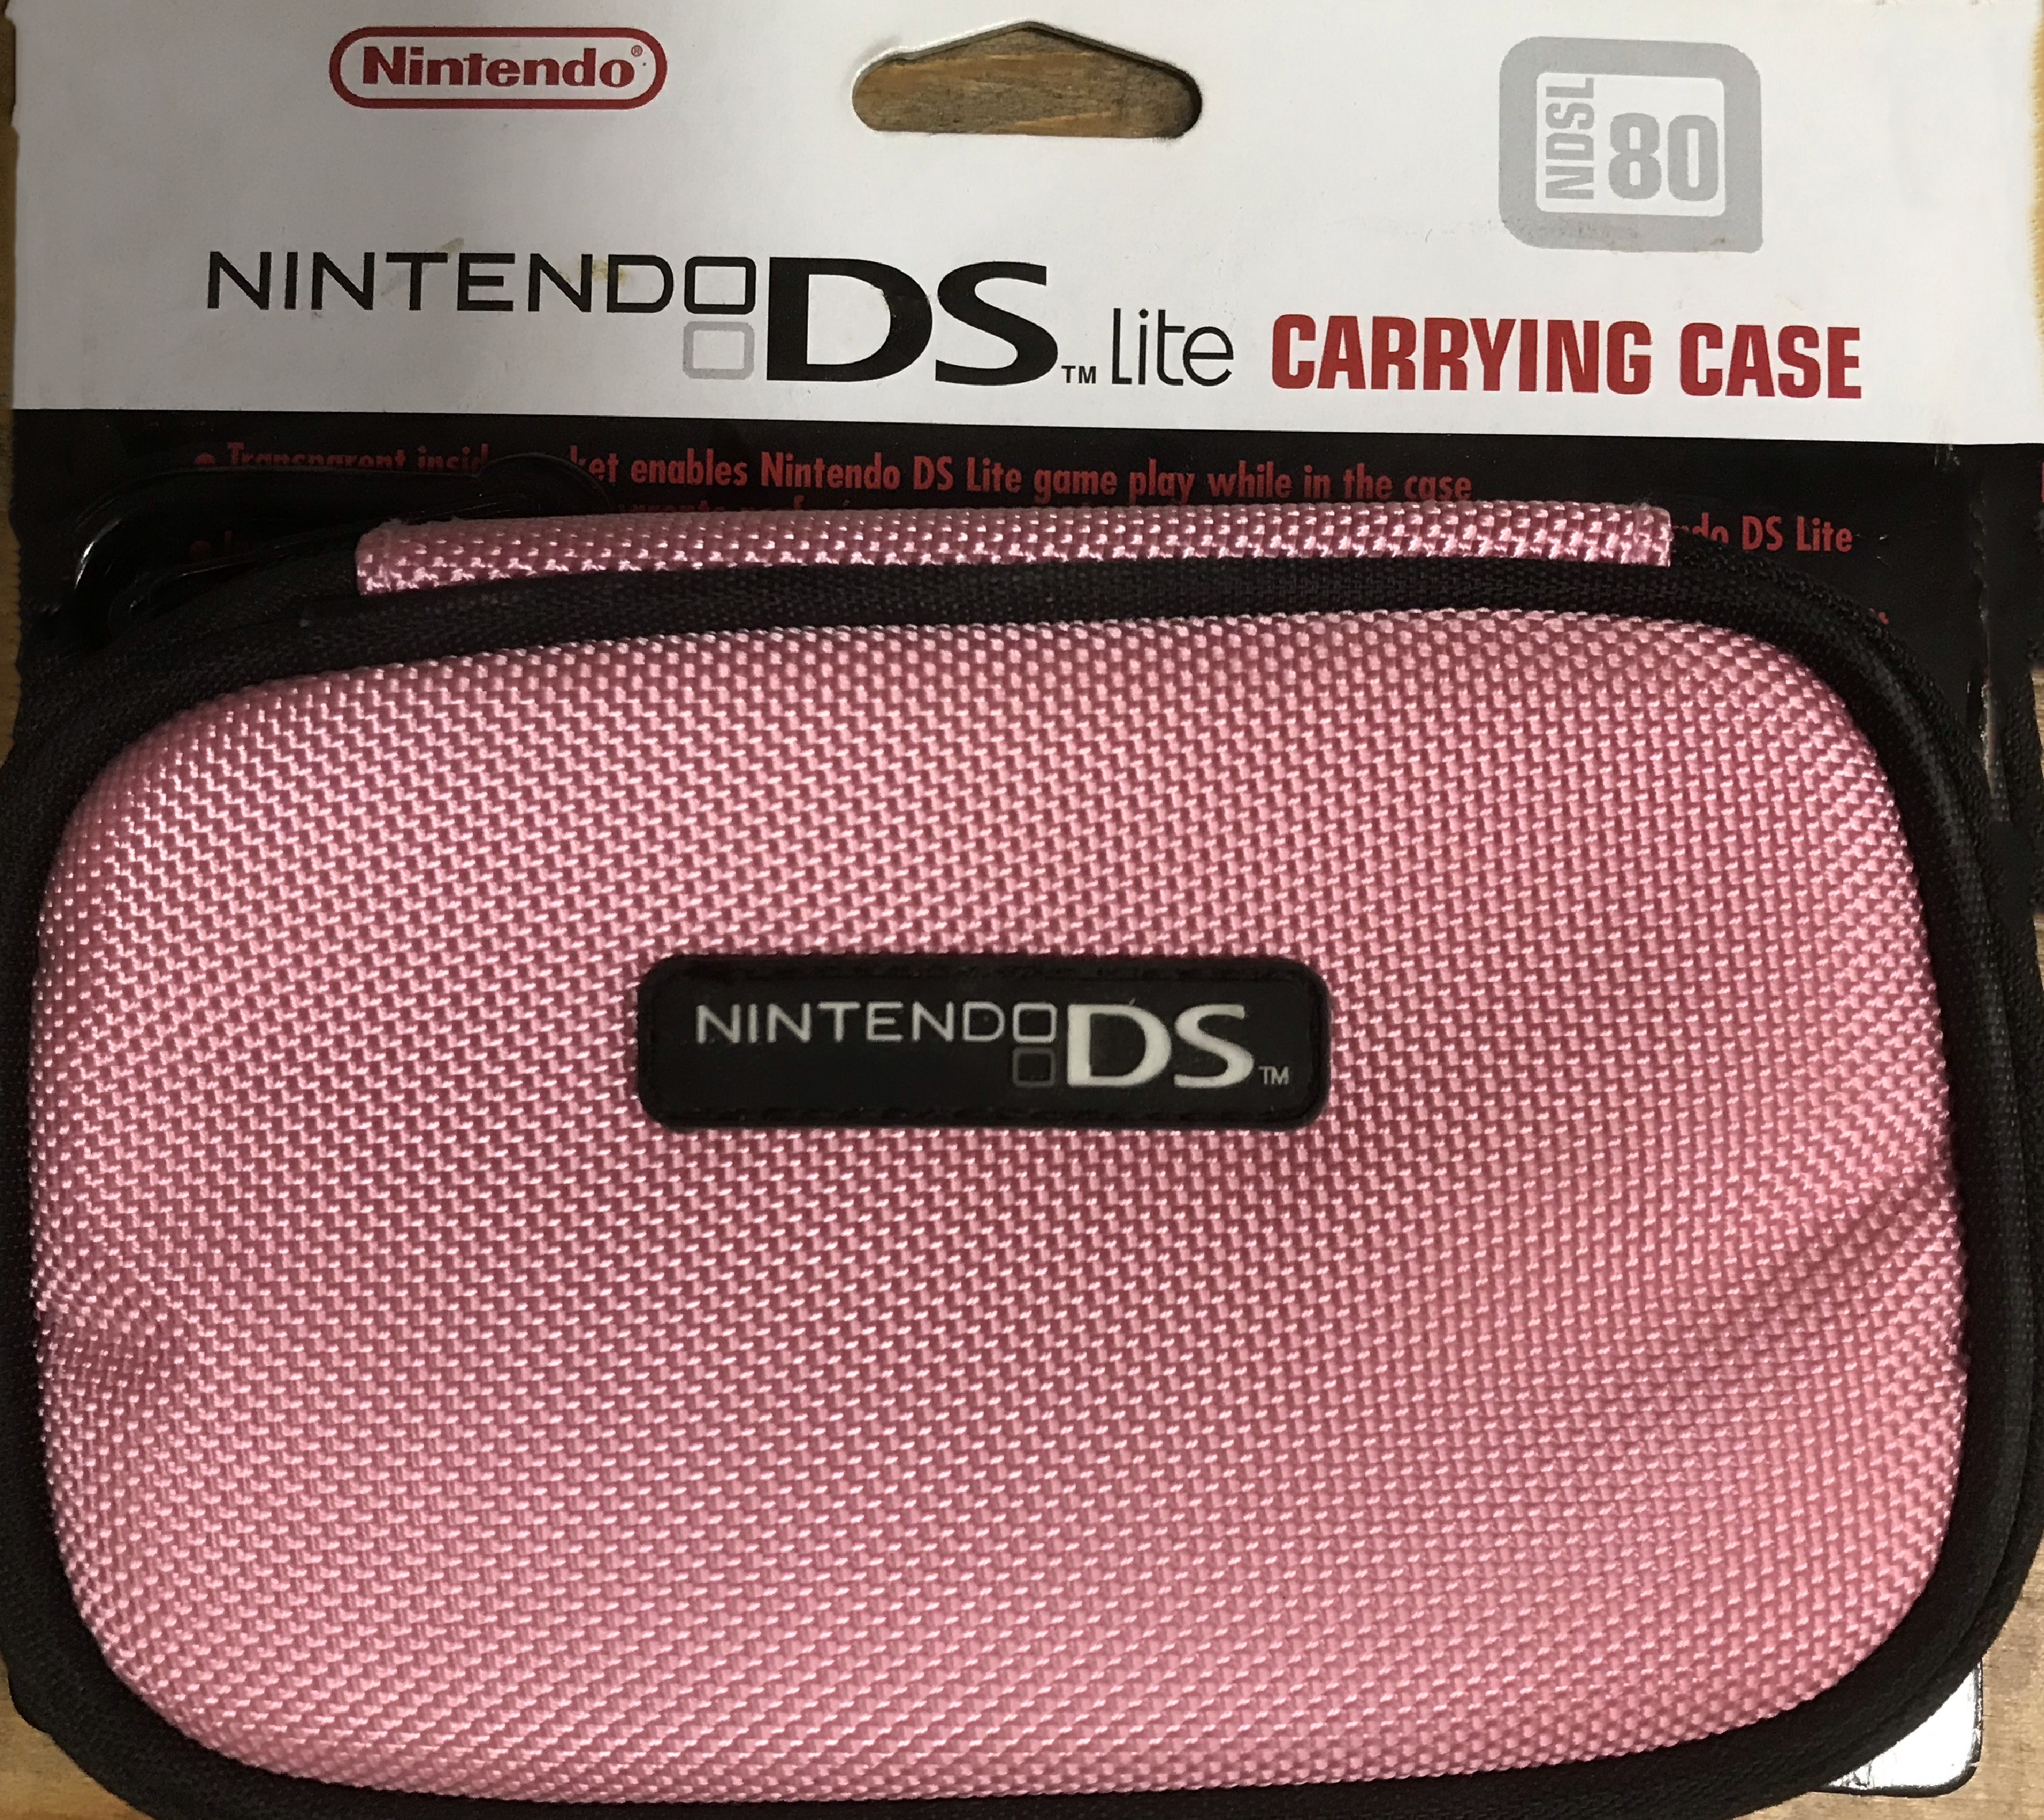 Nintendo DS Light Carrying Case NDSL 80 (Rózsaszín) - Nintendo DS Kiegészítők